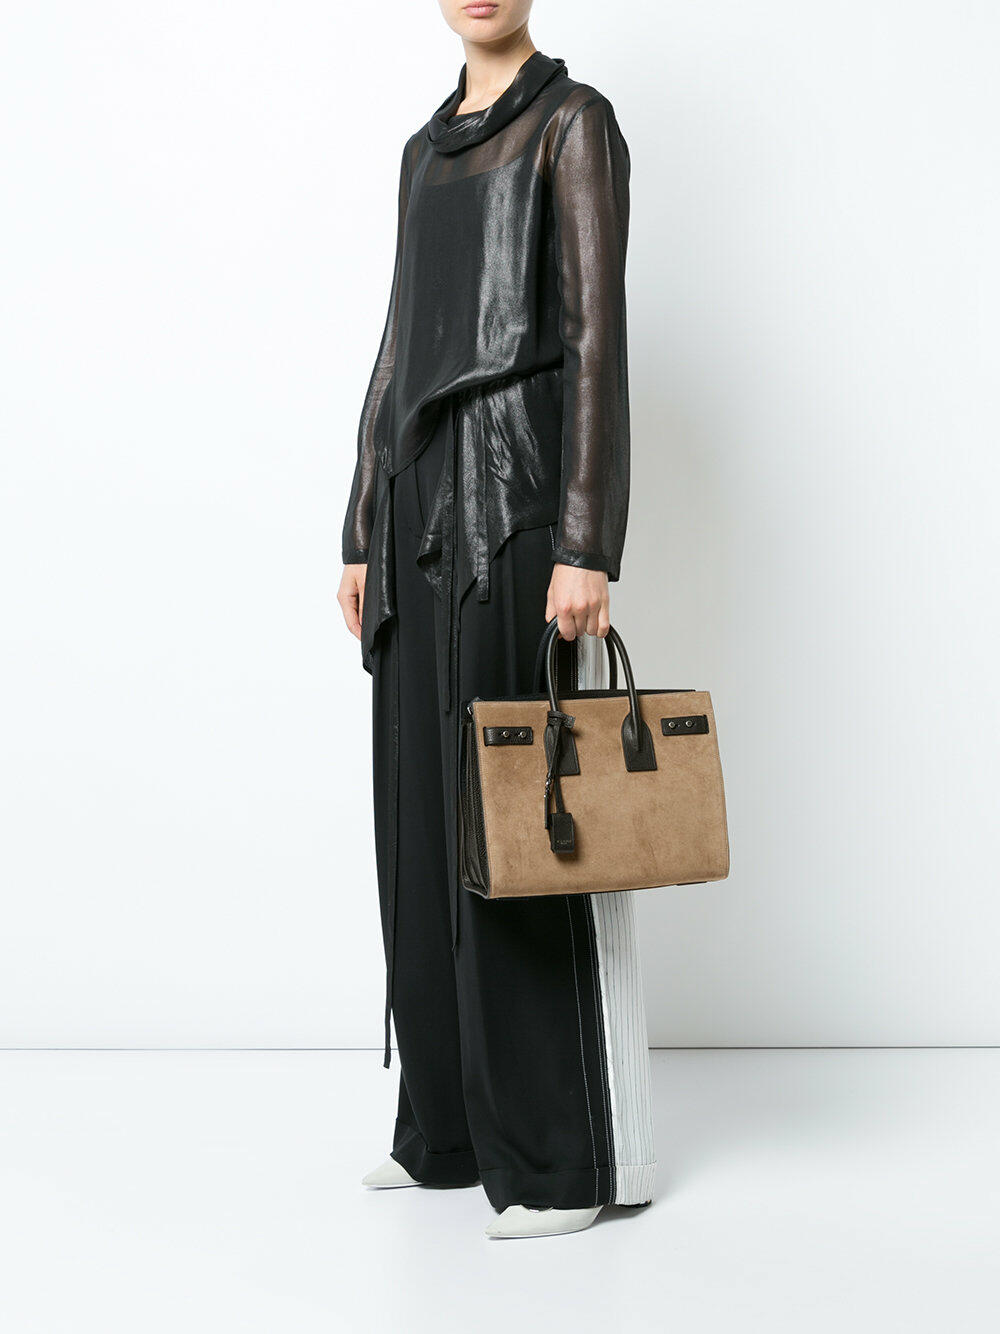 Saint Laurent - Small Sac de Jour Tote Bag - Women - Bovine Leather (Top Grain) - One Size - Black